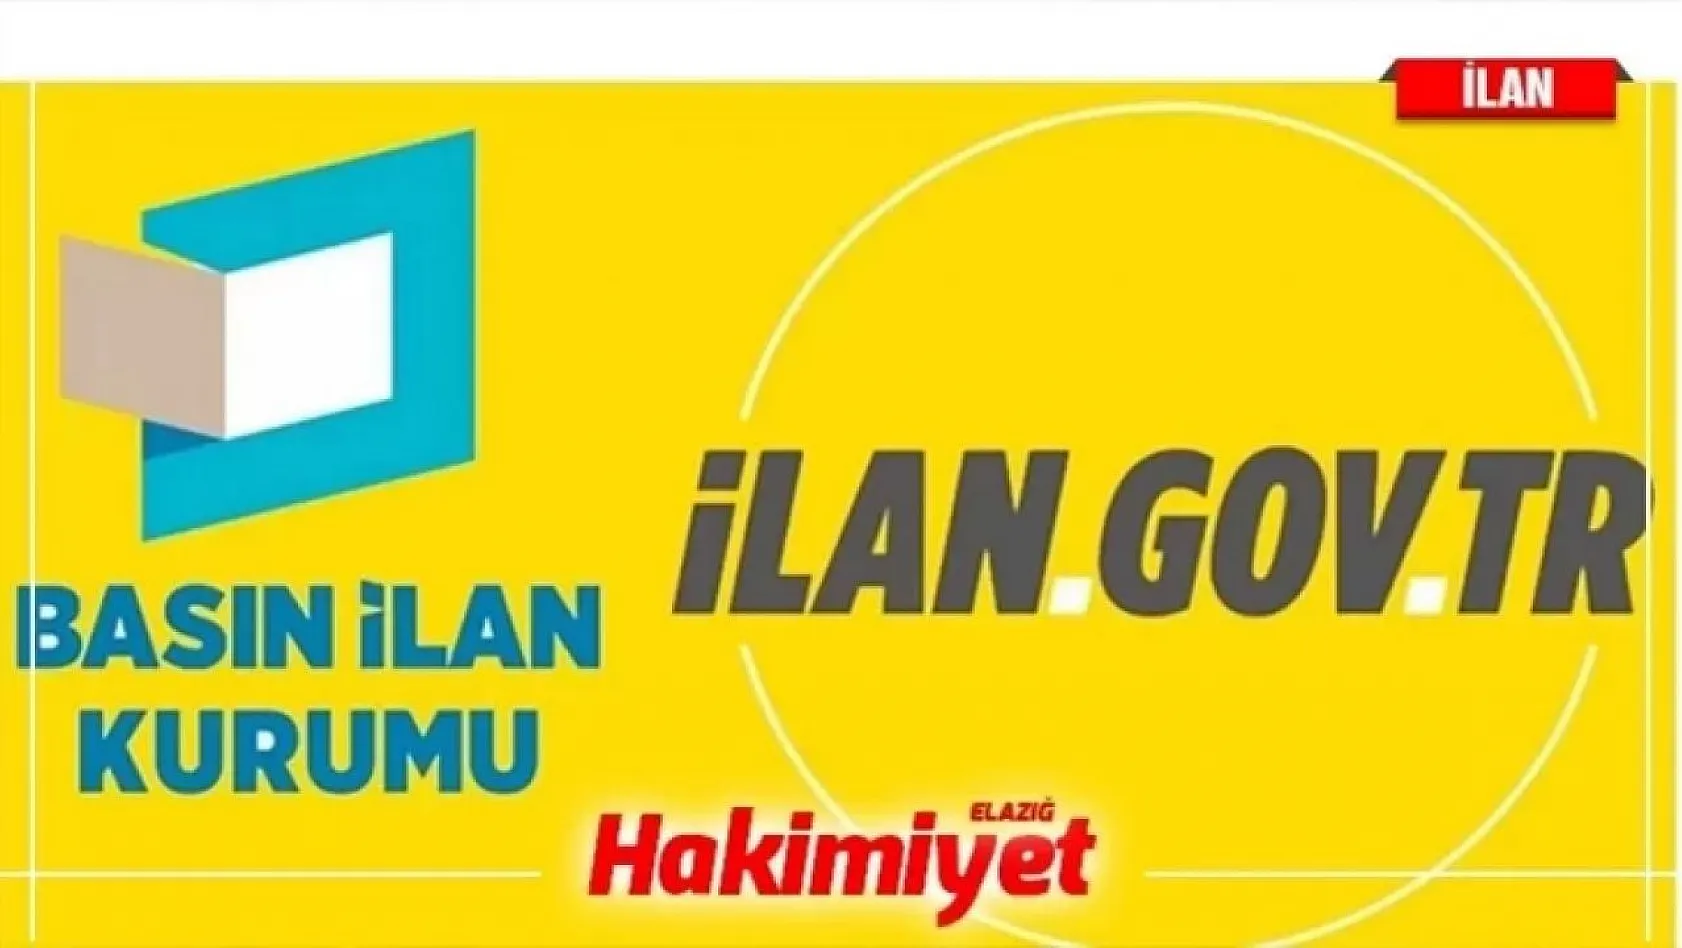 Süleyman Demirel Üniversitesi Sözleşmeli Bilişim Personeli alım ilanı